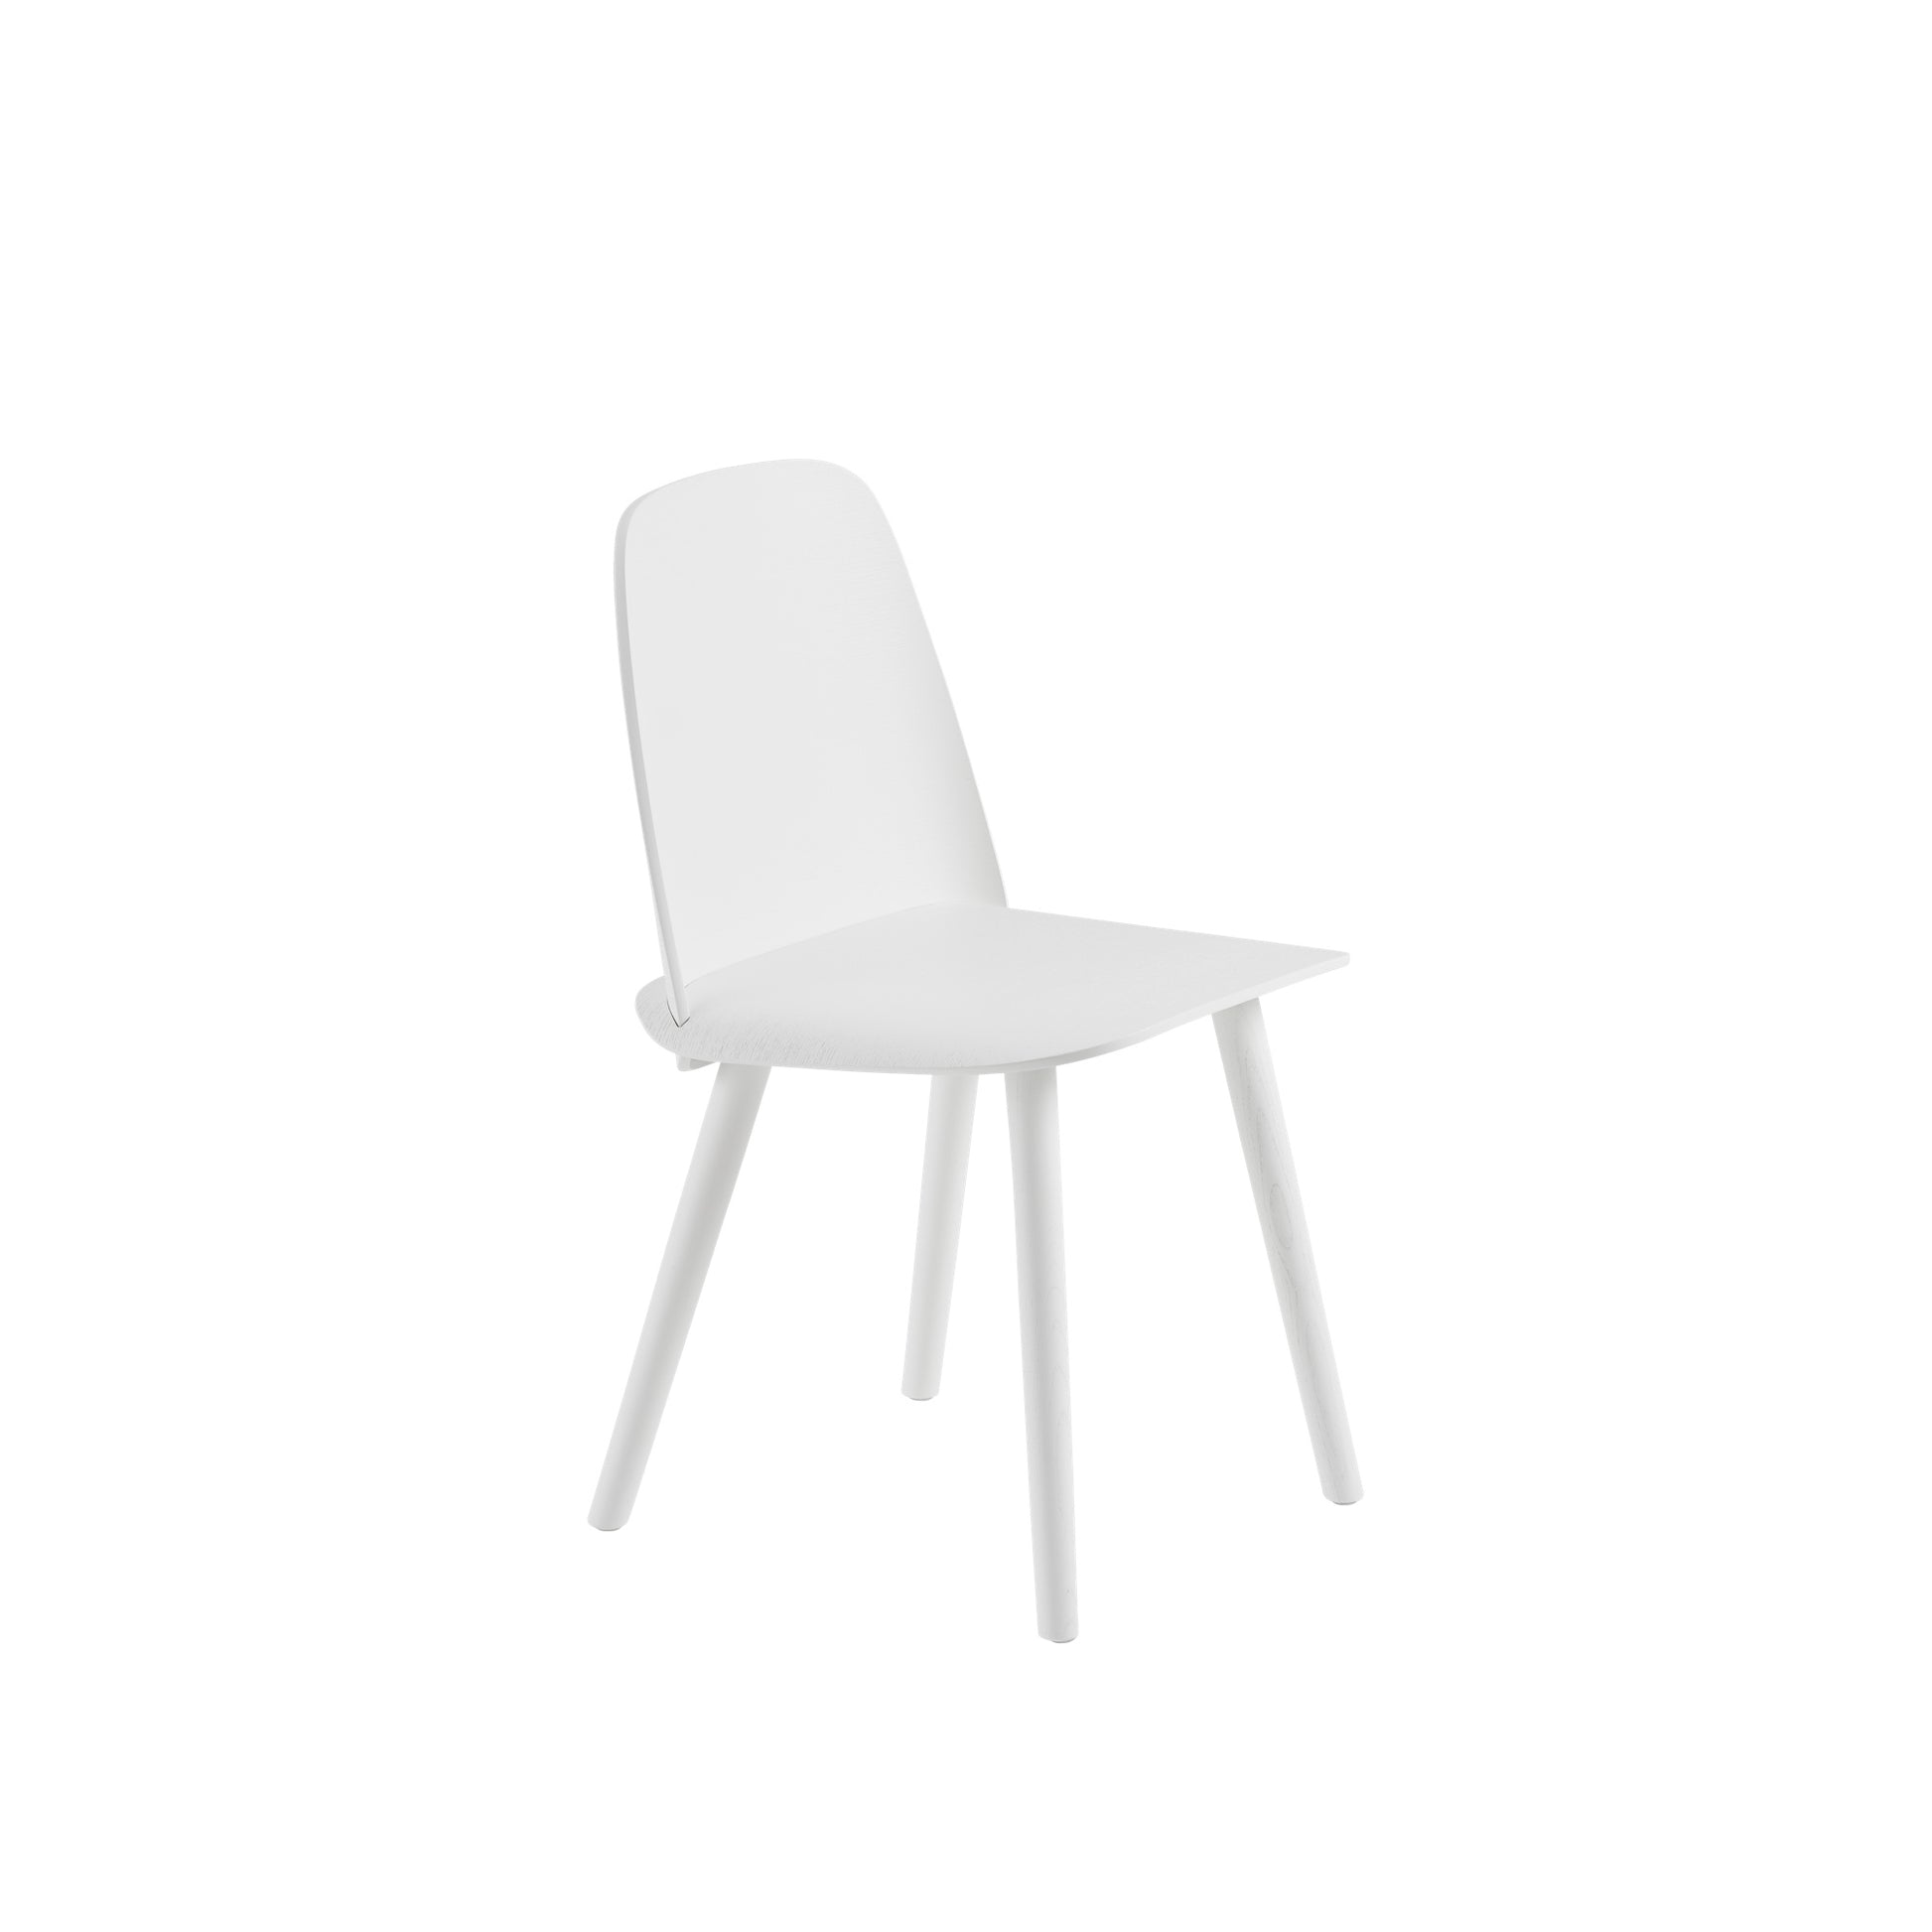 Nerd Dining Chair by Muuto #White